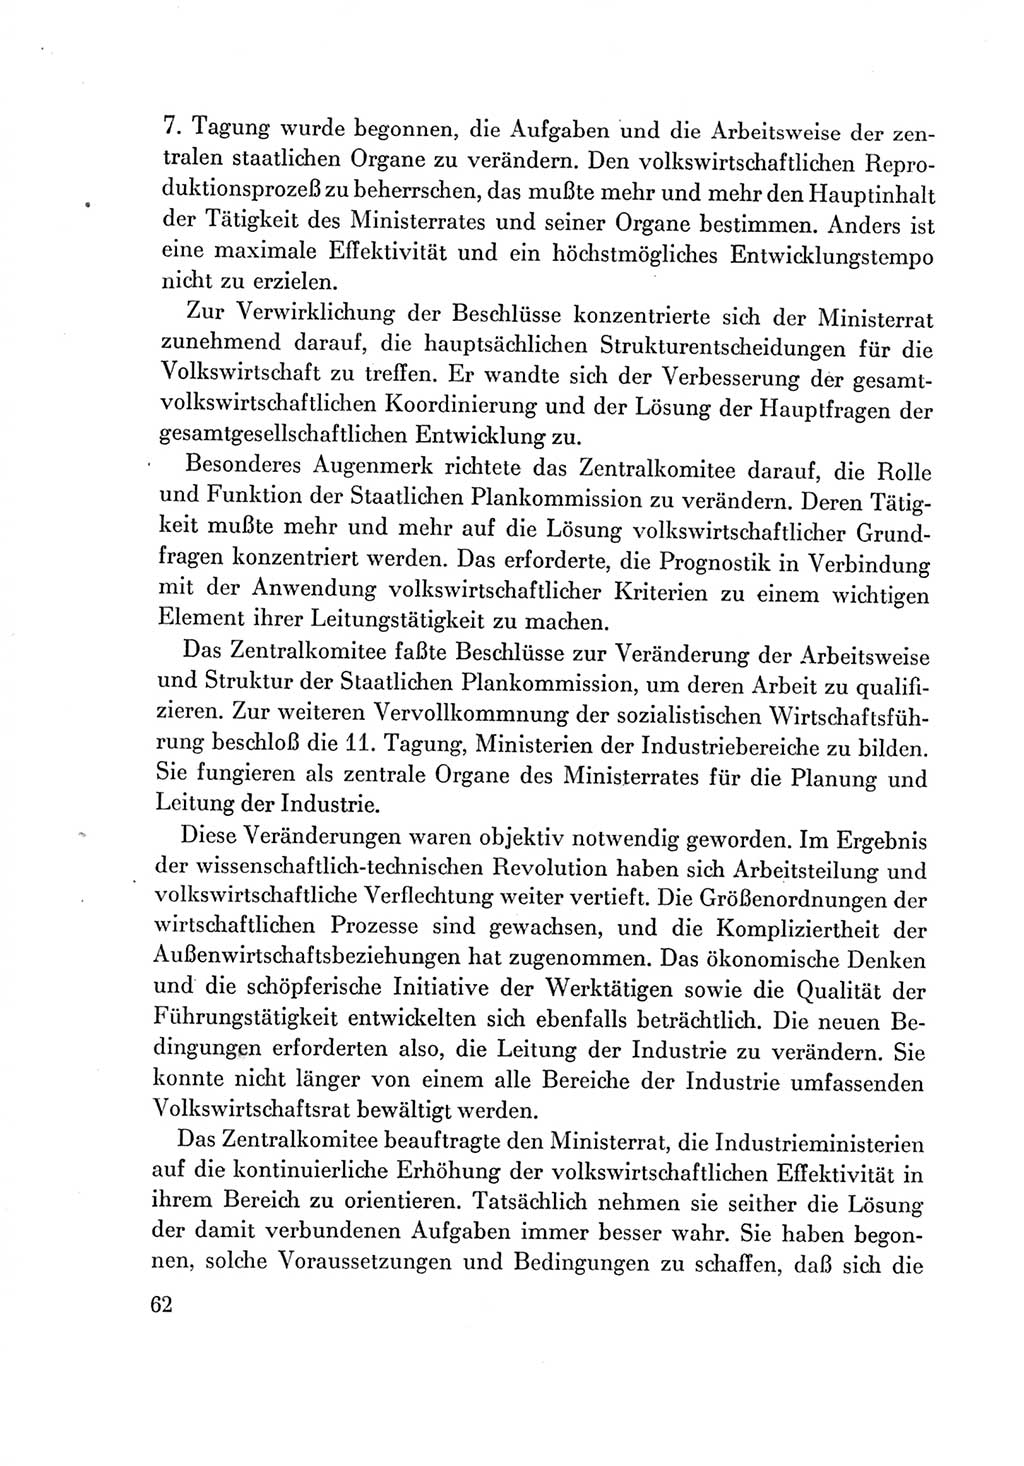 Protokoll der Verhandlungen des Ⅶ. Parteitages der Sozialistischen Einheitspartei Deutschlands (SED) [Deutsche Demokratische Republik (DDR)] 1967, Band Ⅳ, Seite 62 (Prot. Verh. Ⅶ. PT SED DDR 1967, Bd. Ⅳ, S. 62)